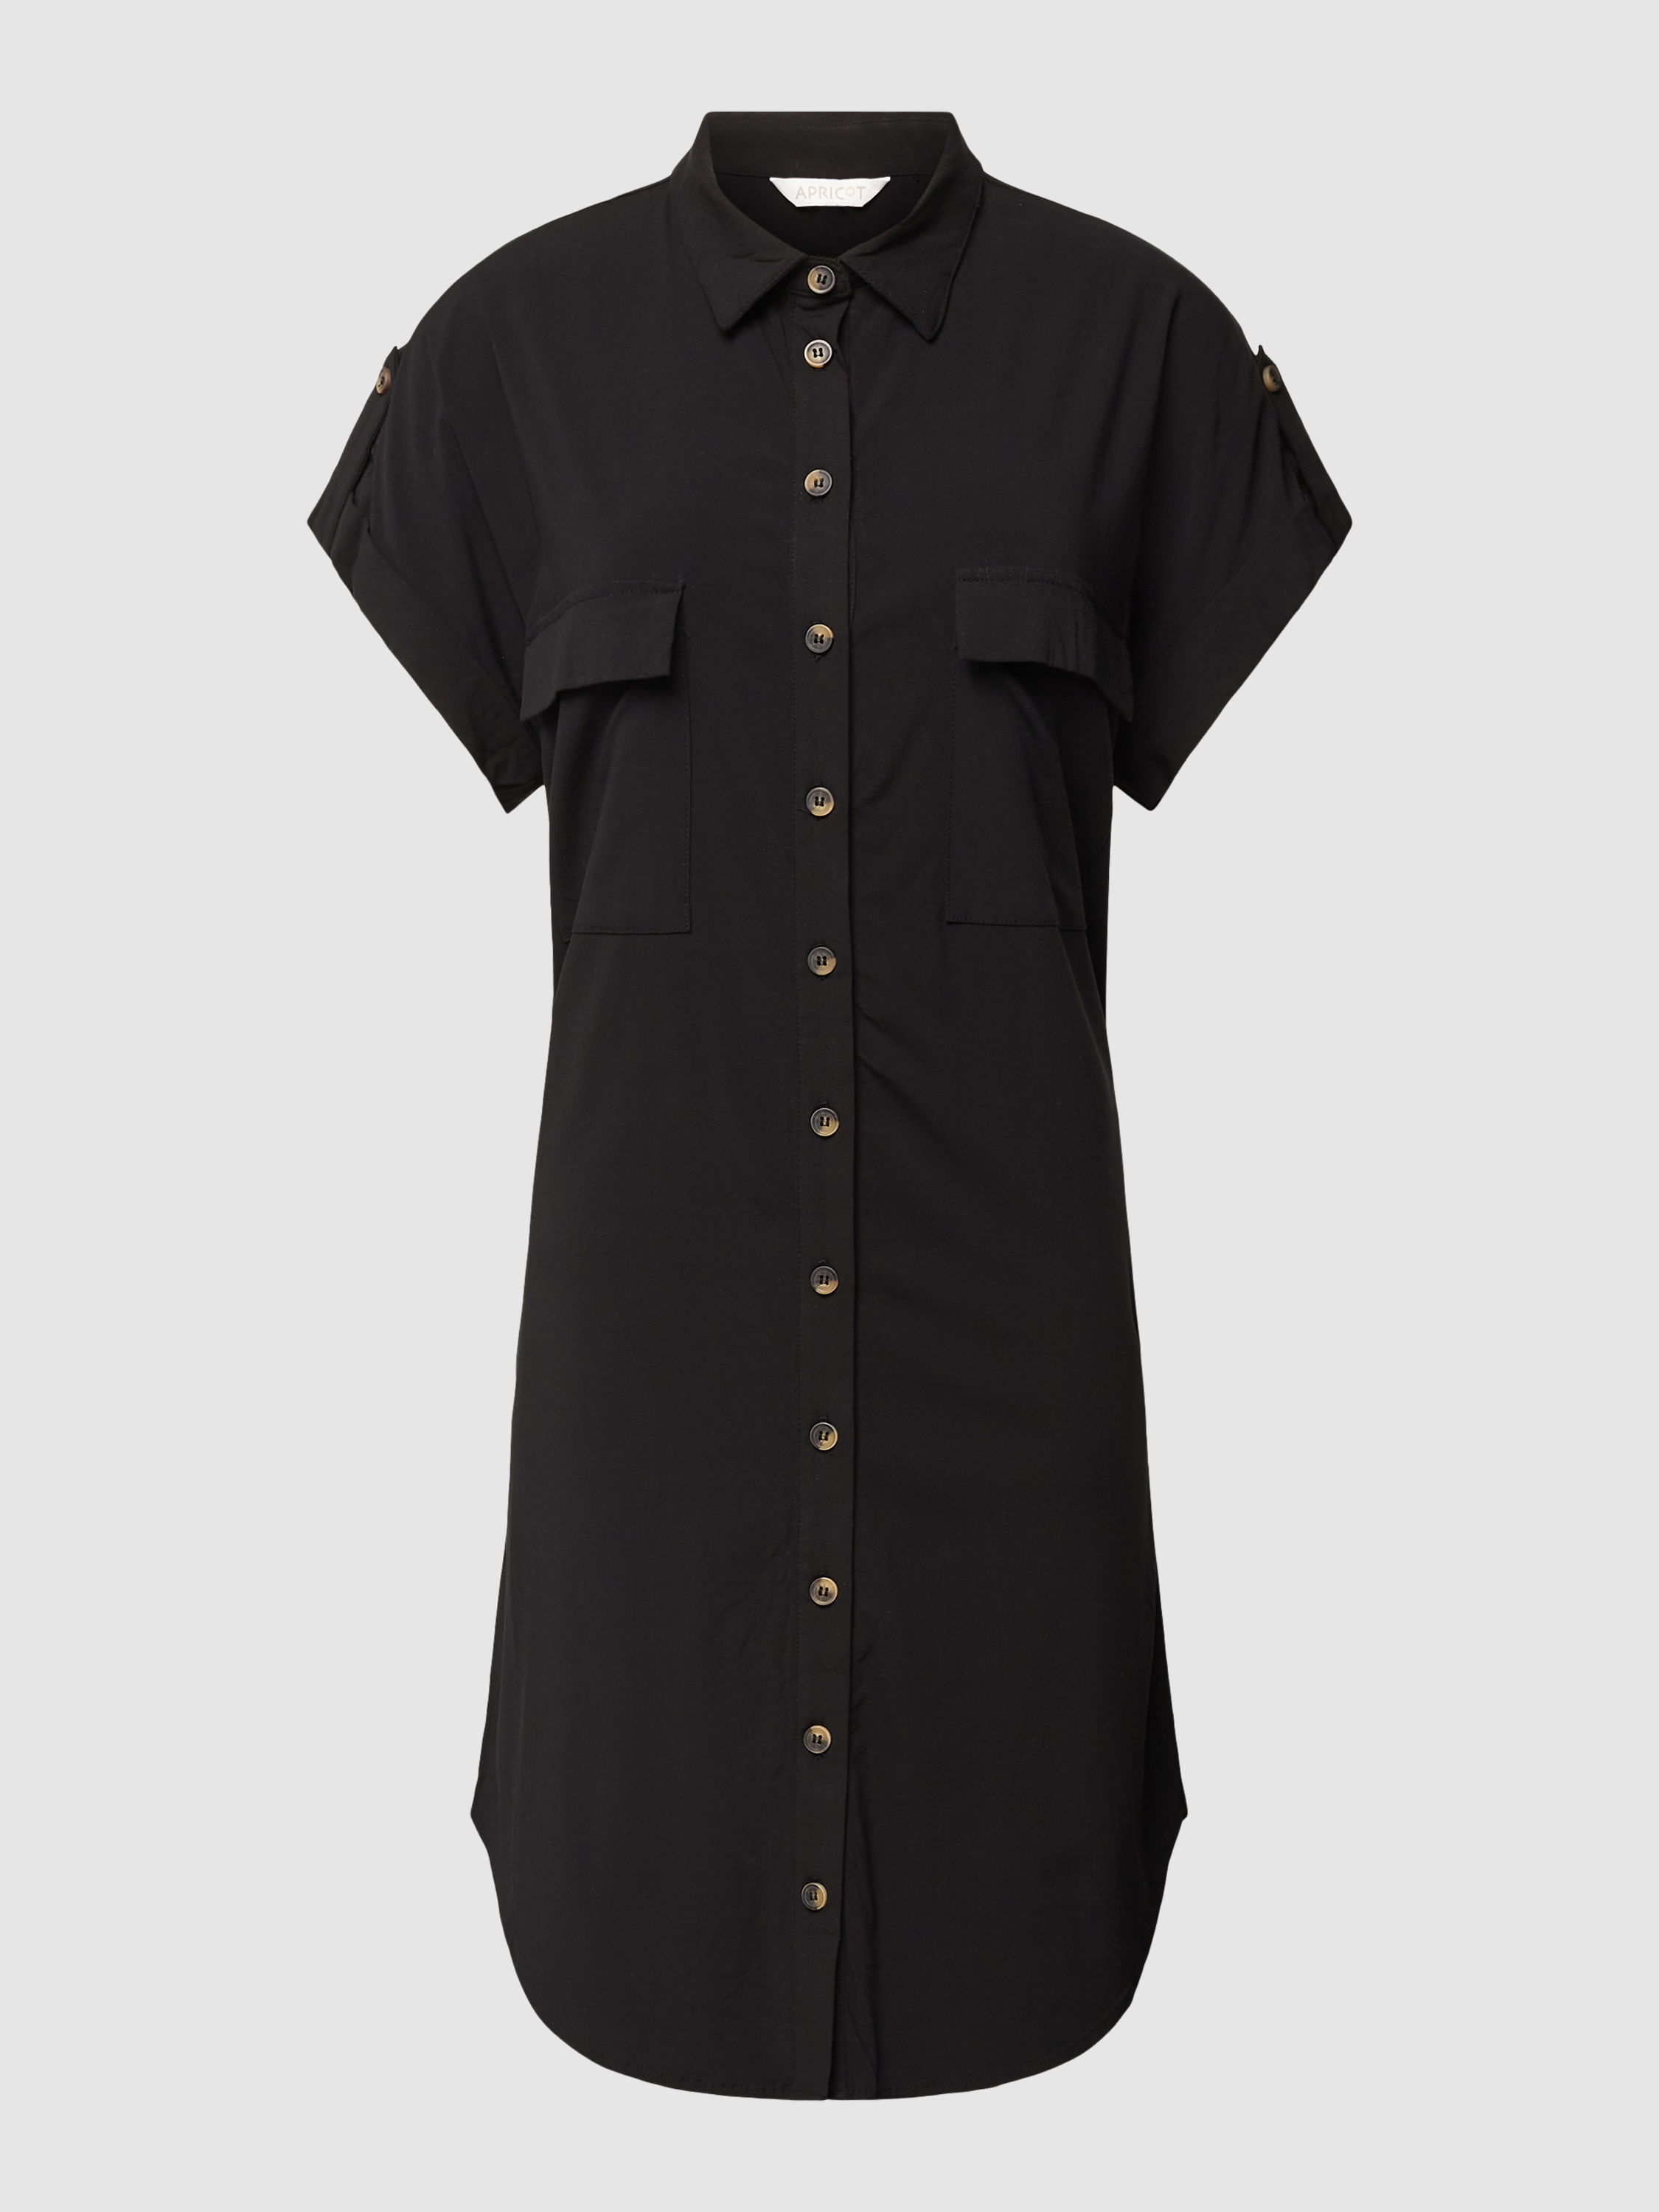 Платье женское Apricot 1774622 черное S (доставка из-за рубежа)